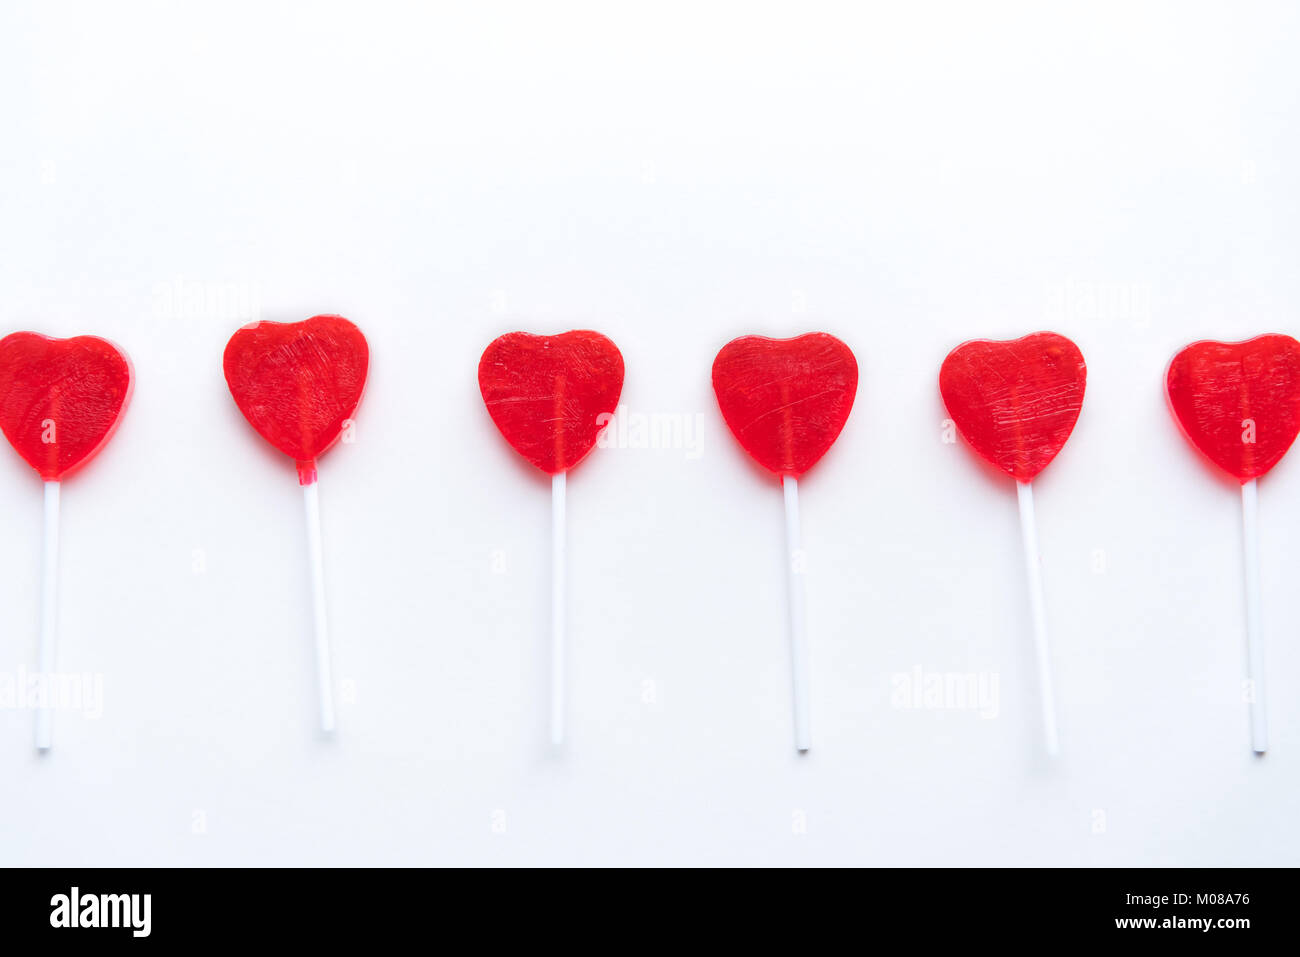 Saint Valentin coeur rouge lollipops dans une rangée sur fond blanc Banque D'Images